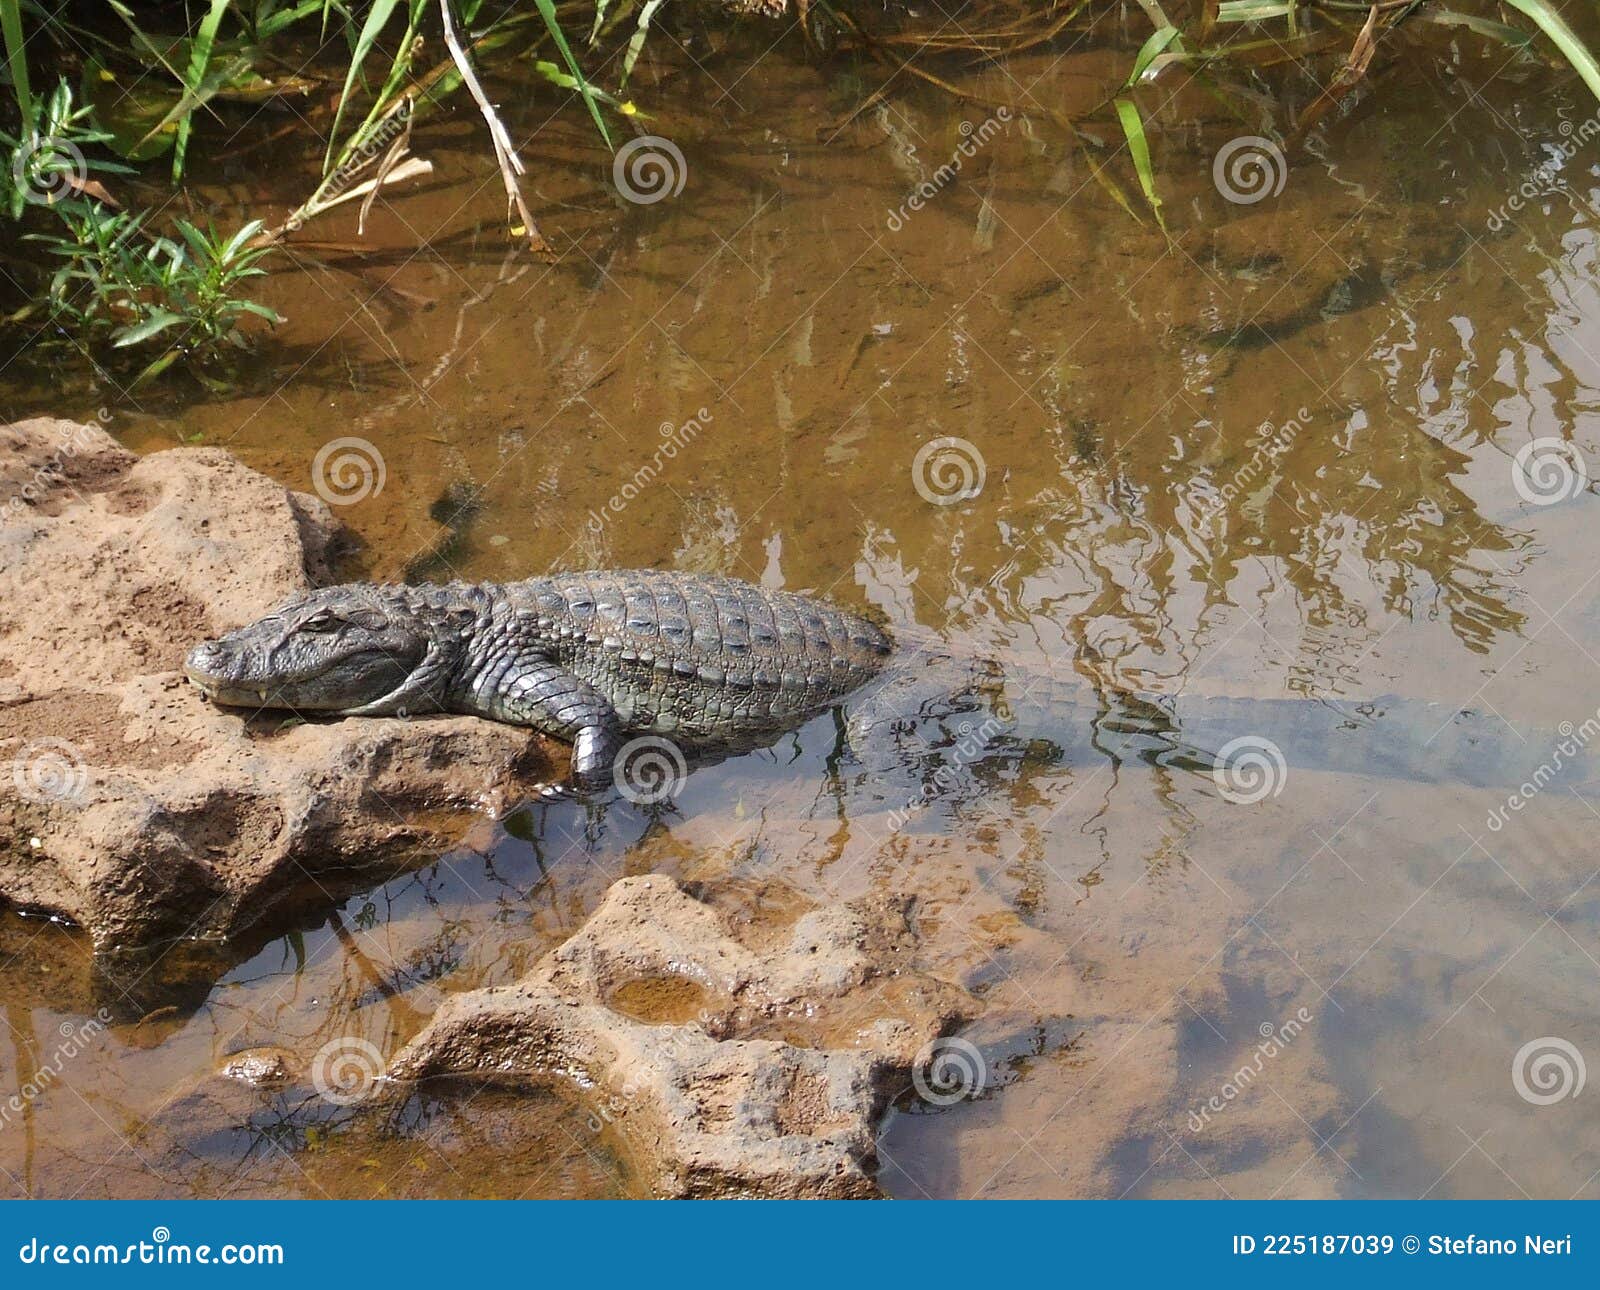 crocodile on the rio iguazu river, brazil